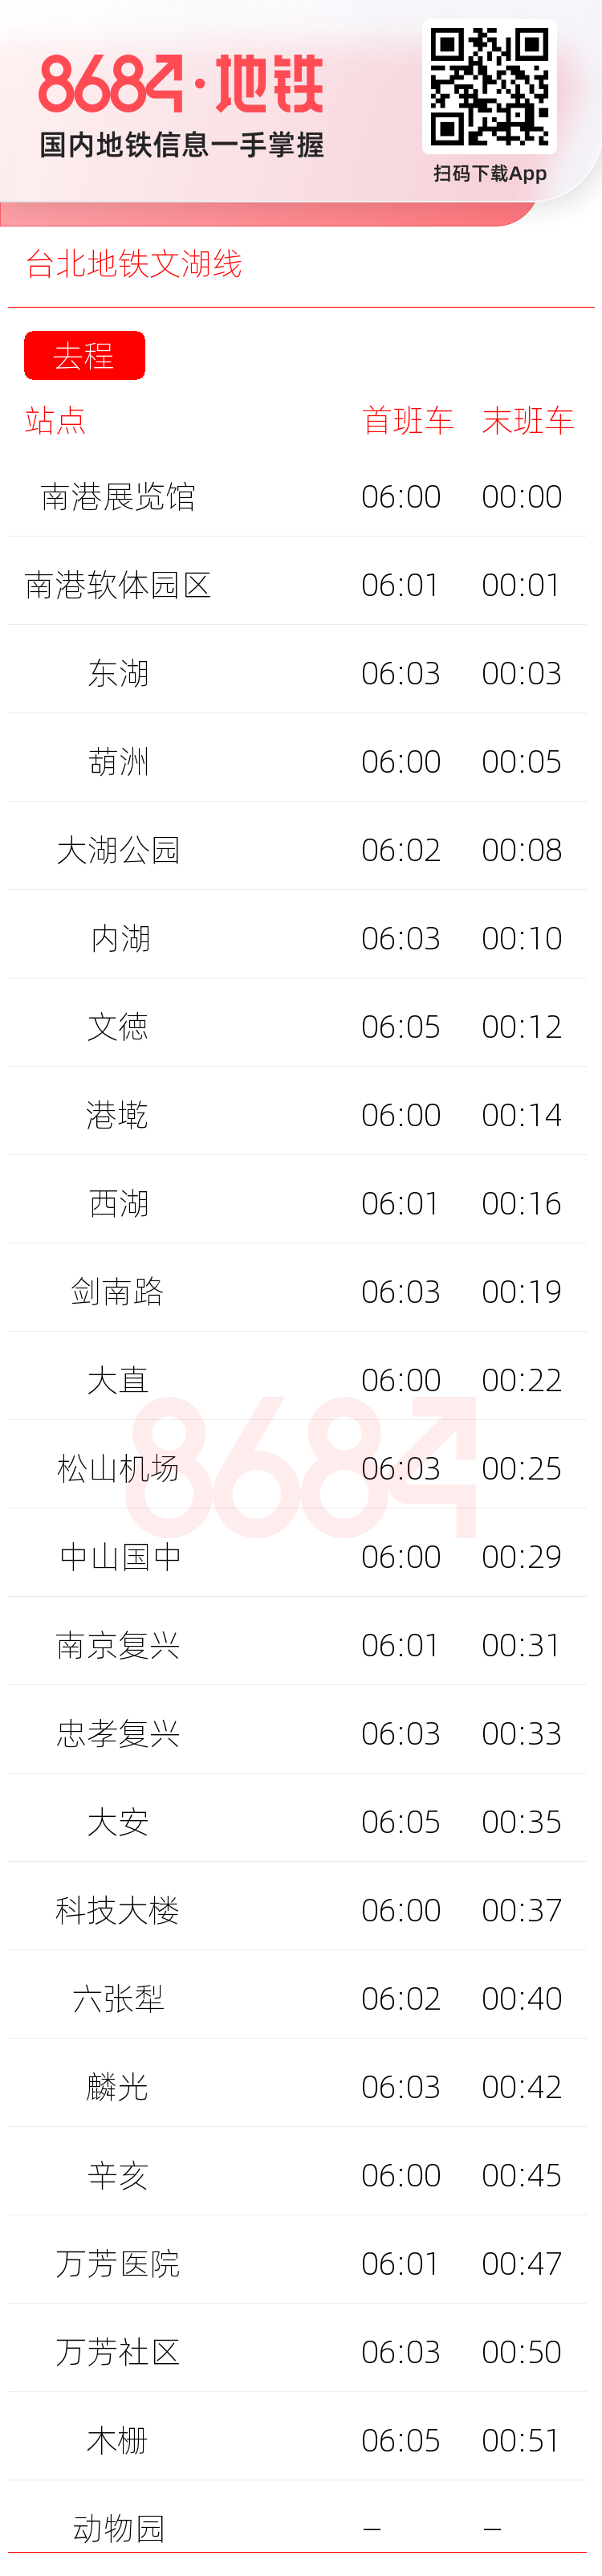 台北地铁文湖线运营时间表